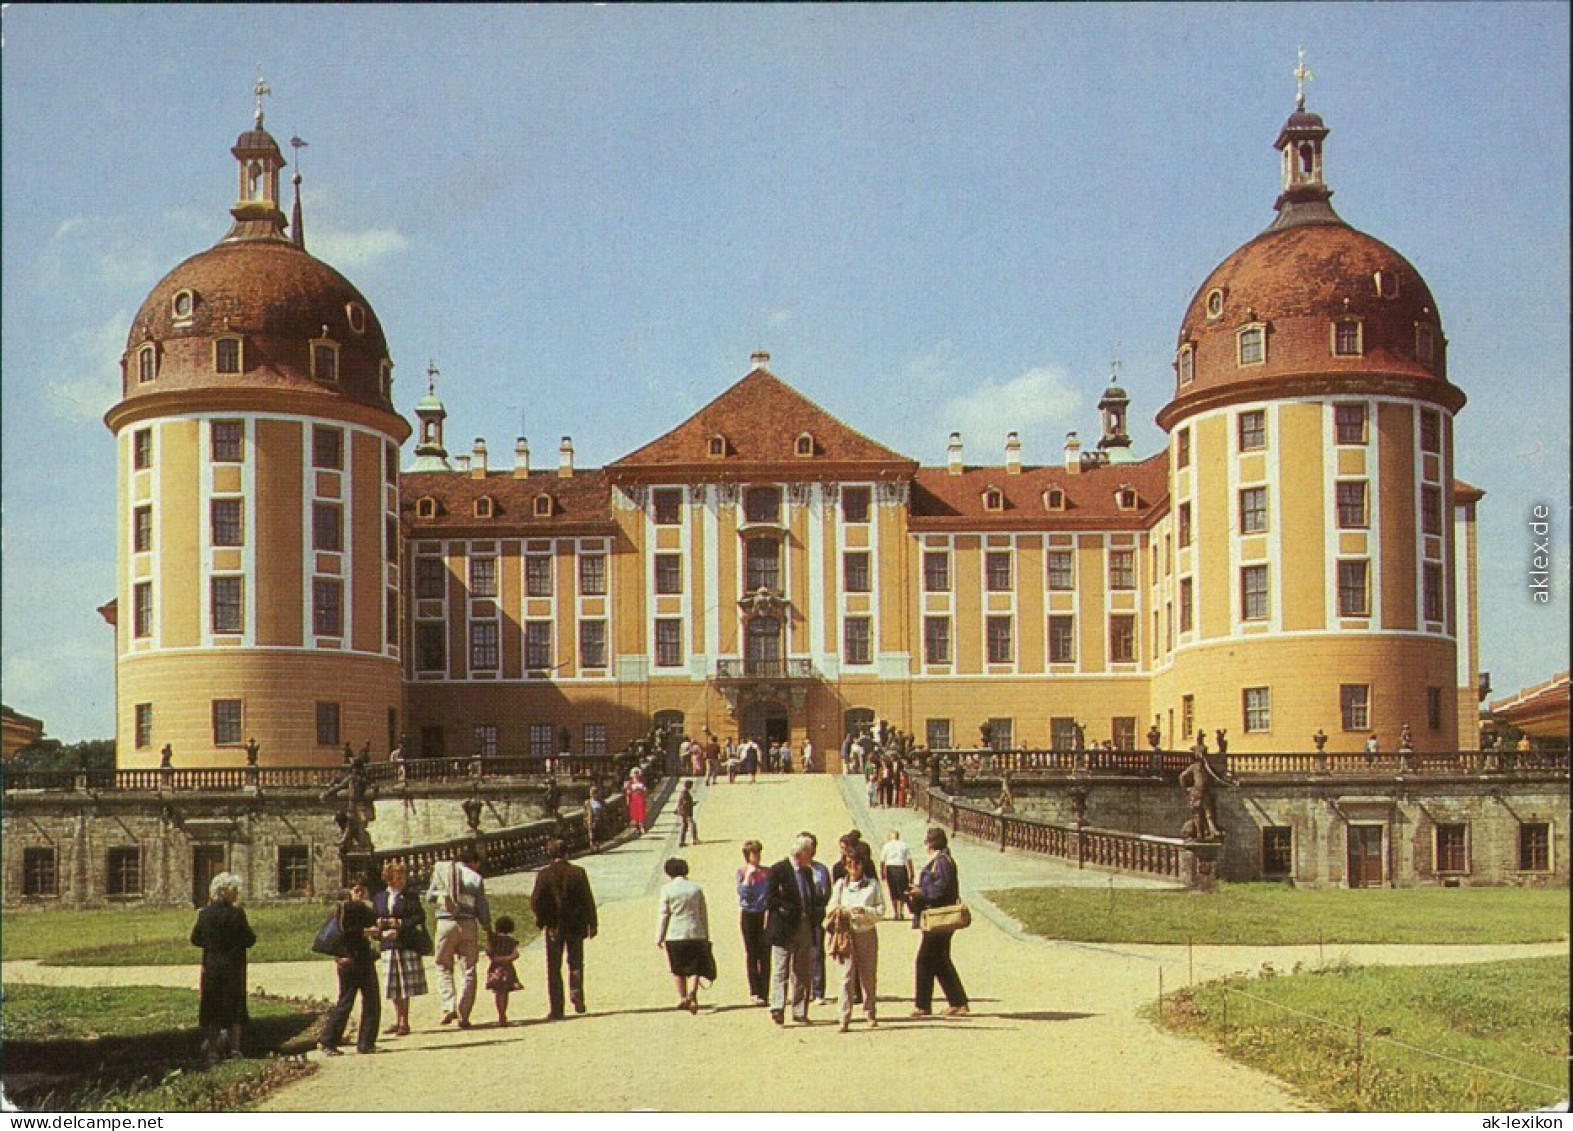 Ansichtskarte Moritzburg Kgl. Jagdschloss - Außenansicht Mit Besuchern 1987 - Moritzburg